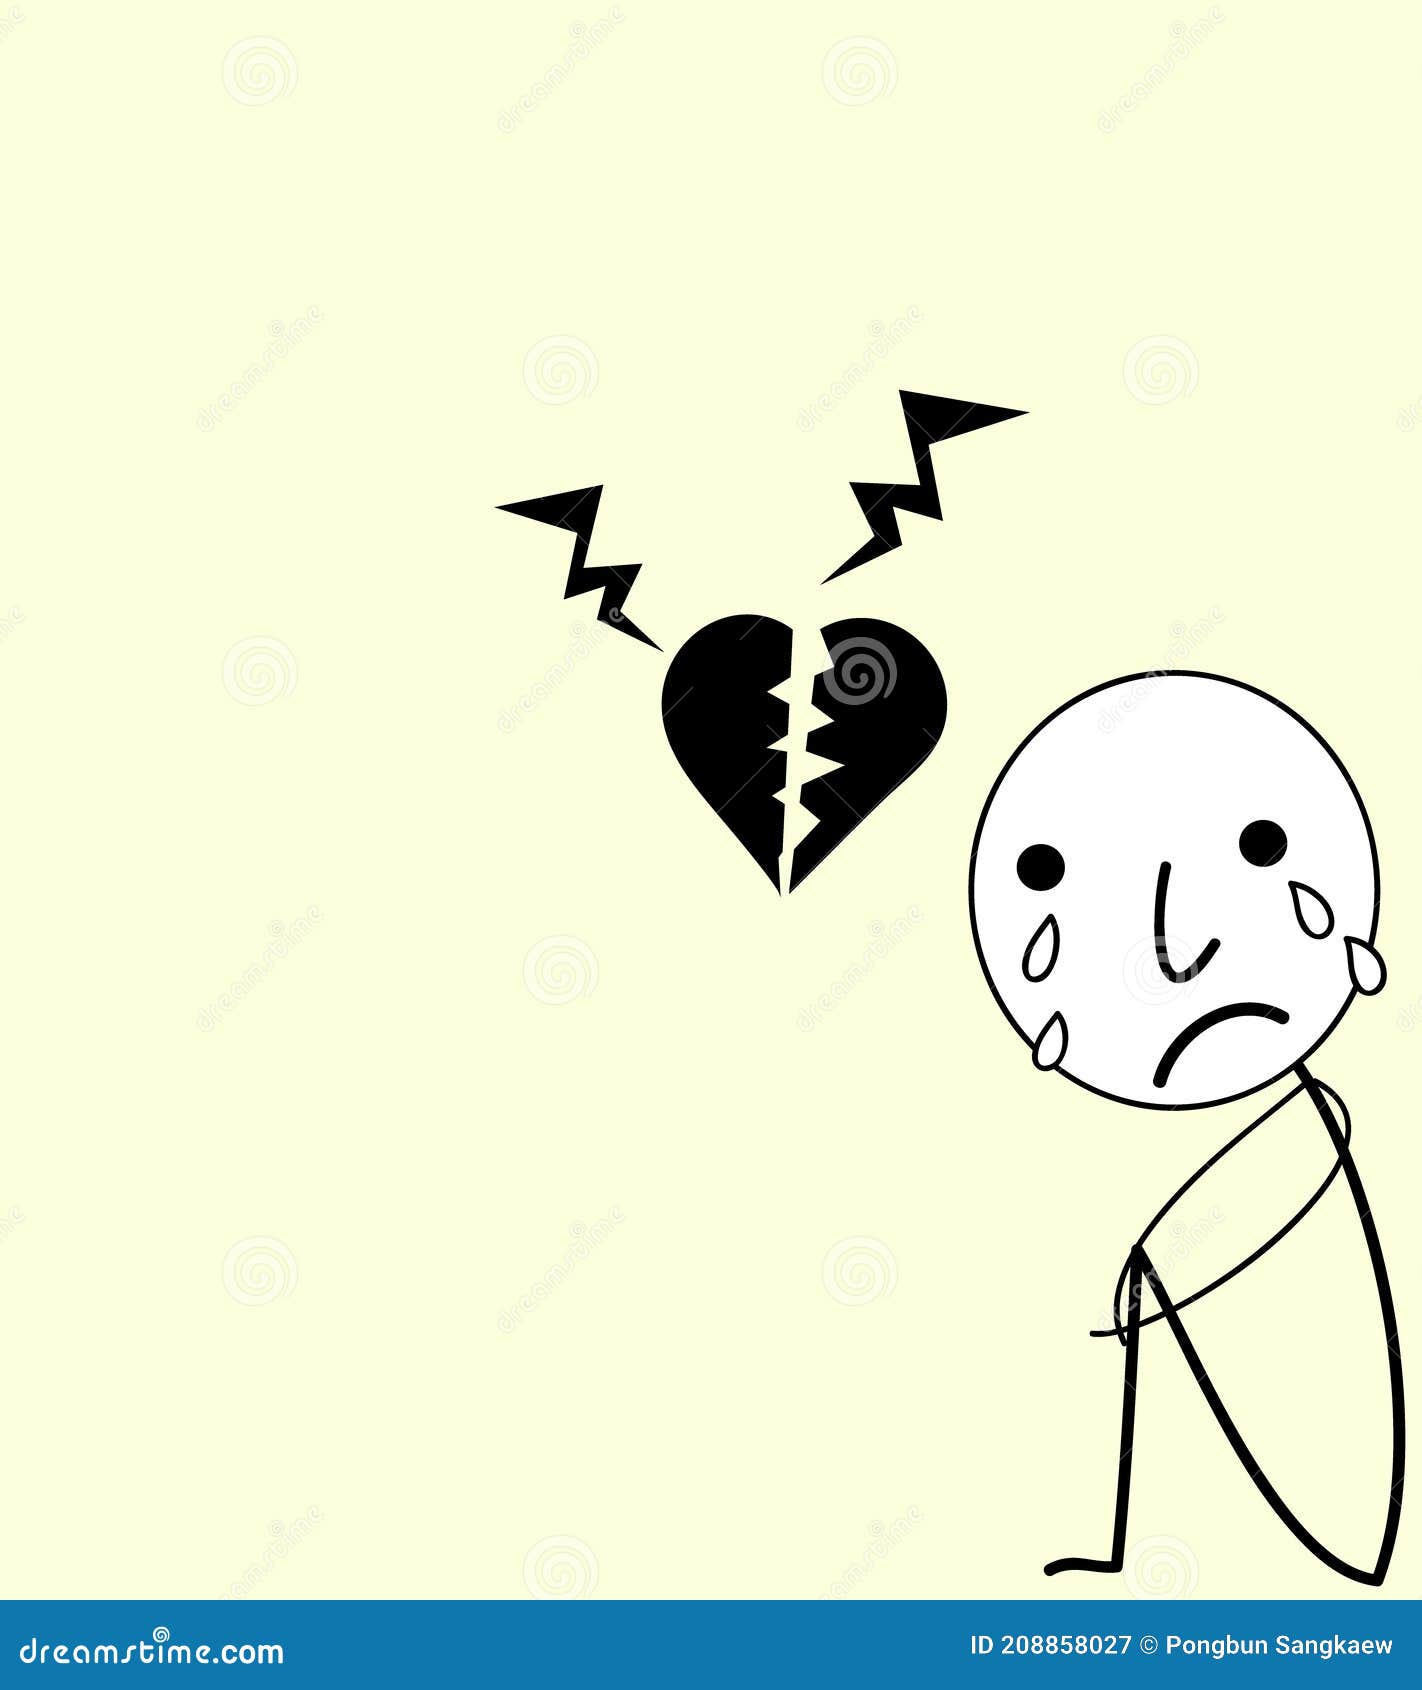 Sad Boy Broken Heart Cartoon with Speech Bubble Stock Illustration -  Illustration of black, broken: 208858027